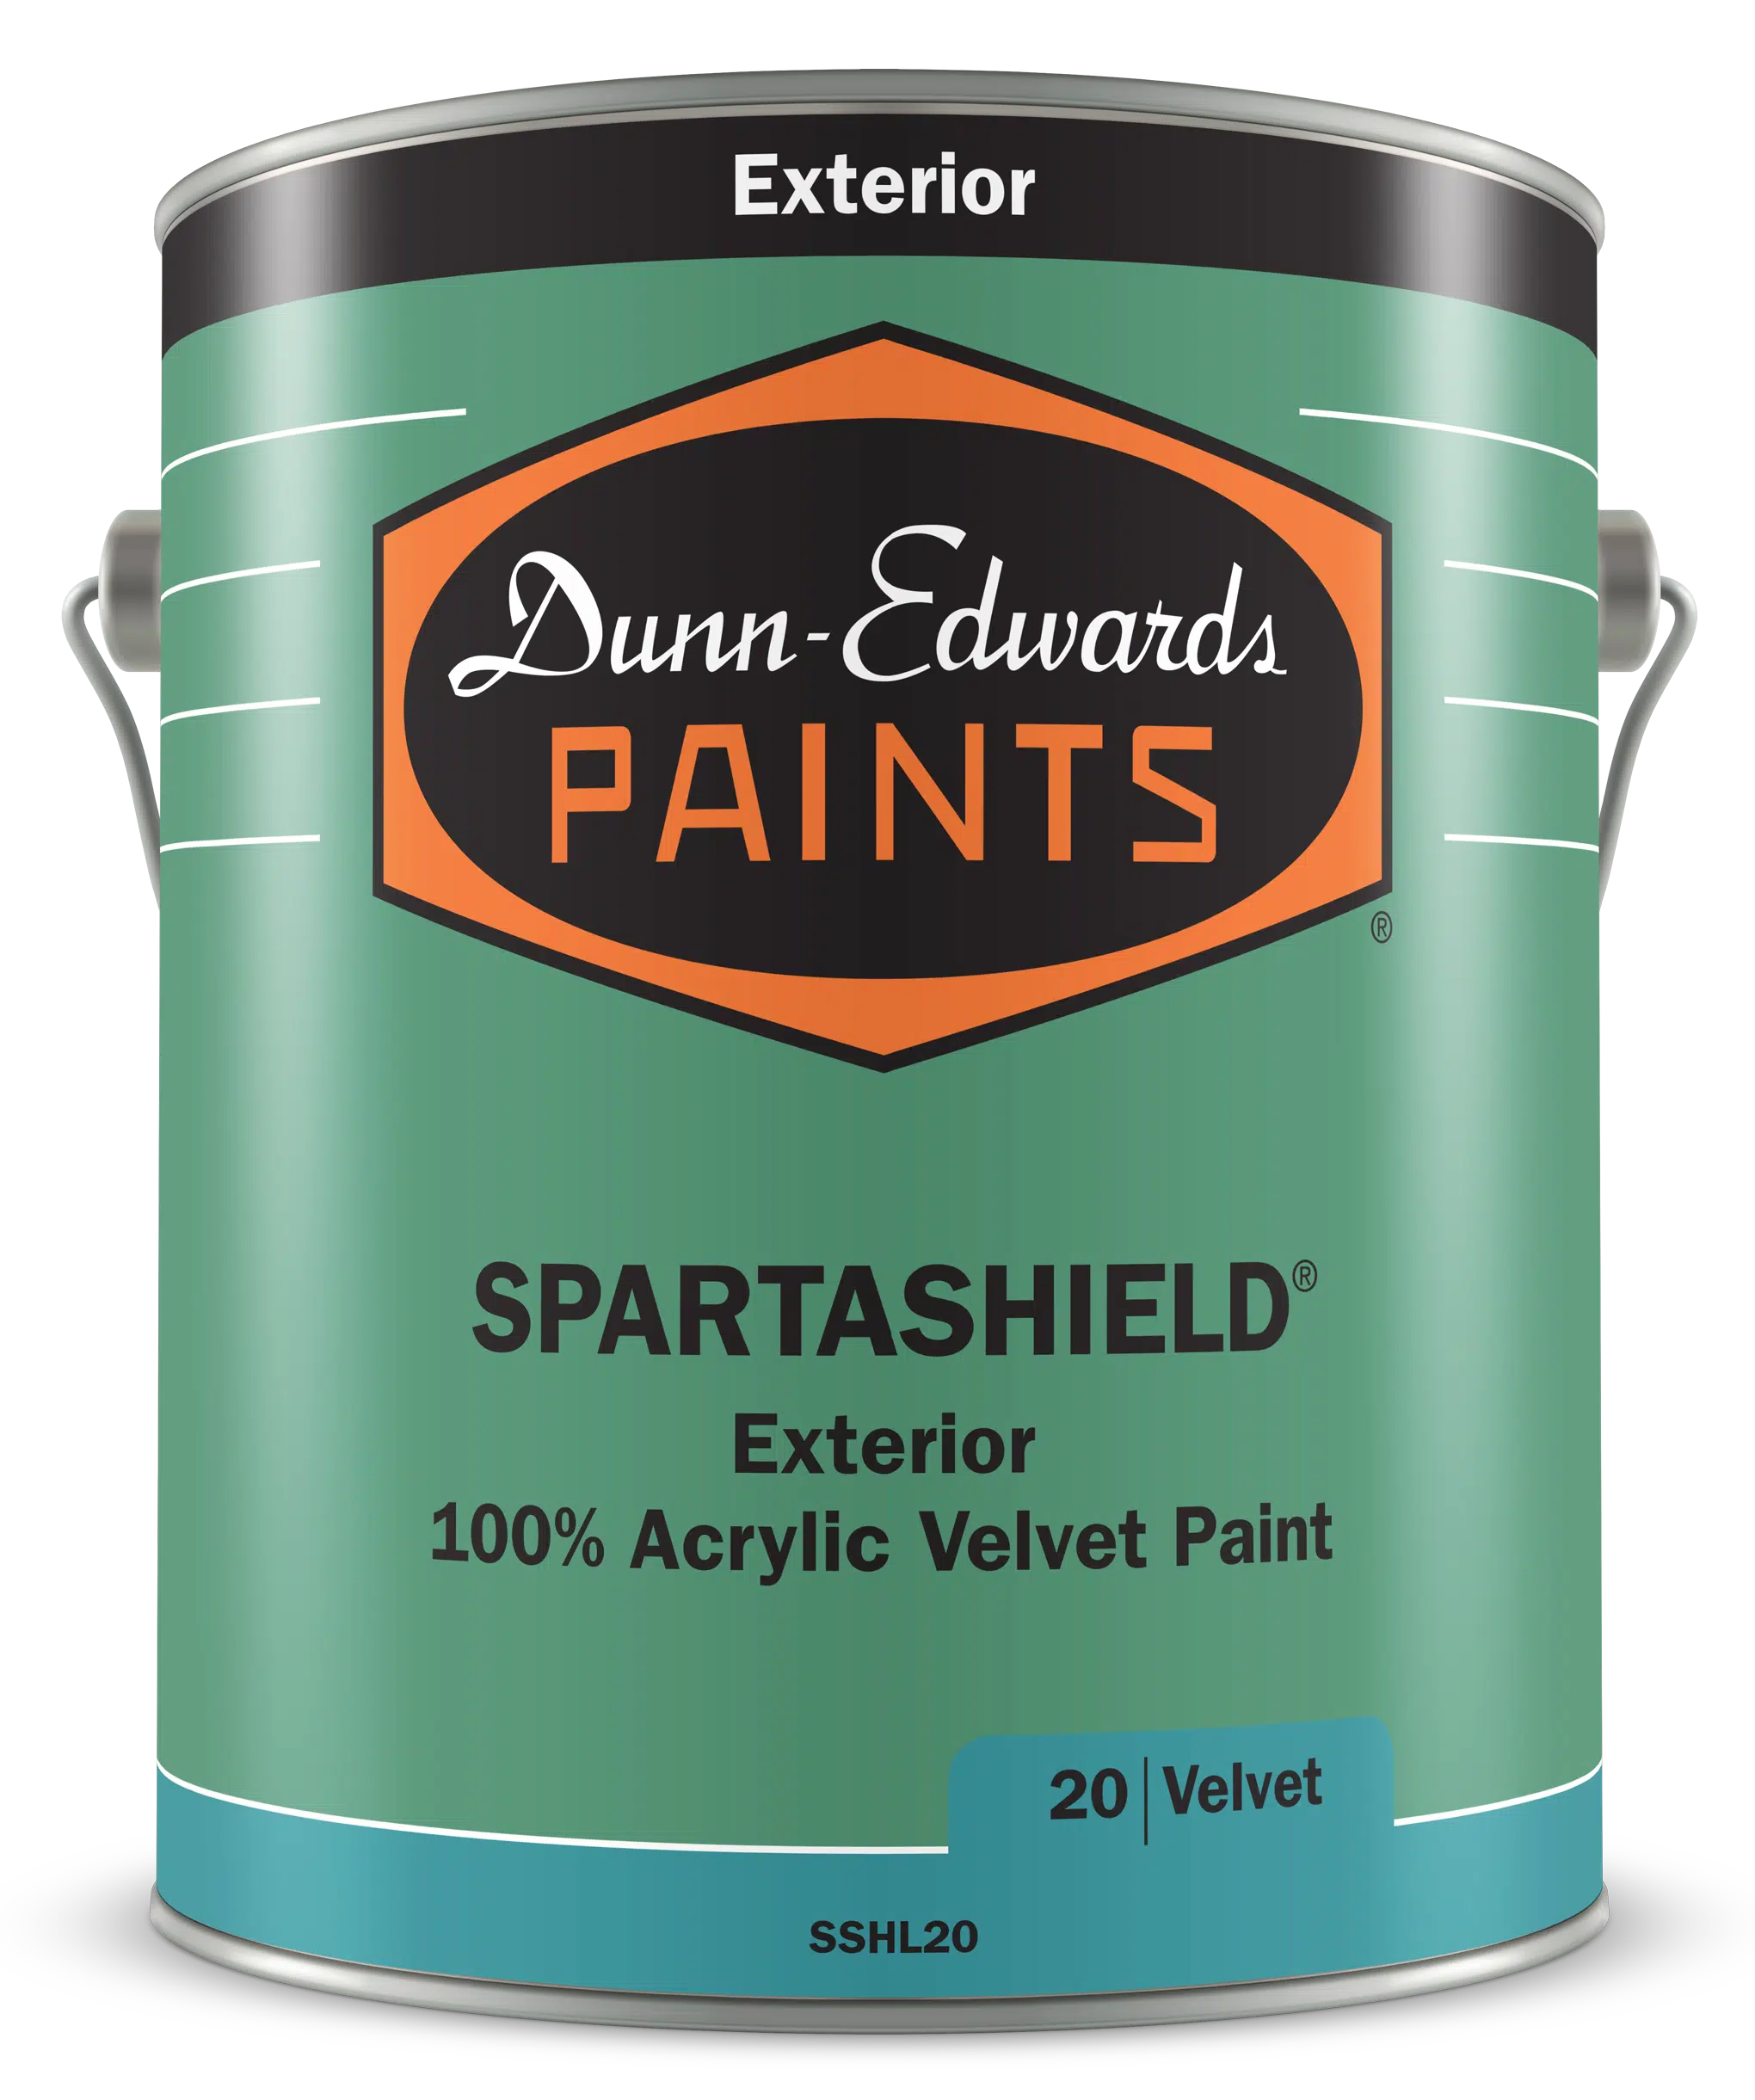 SPARTASHIELD Exterior 100% Acrylic Velvet Paint Can